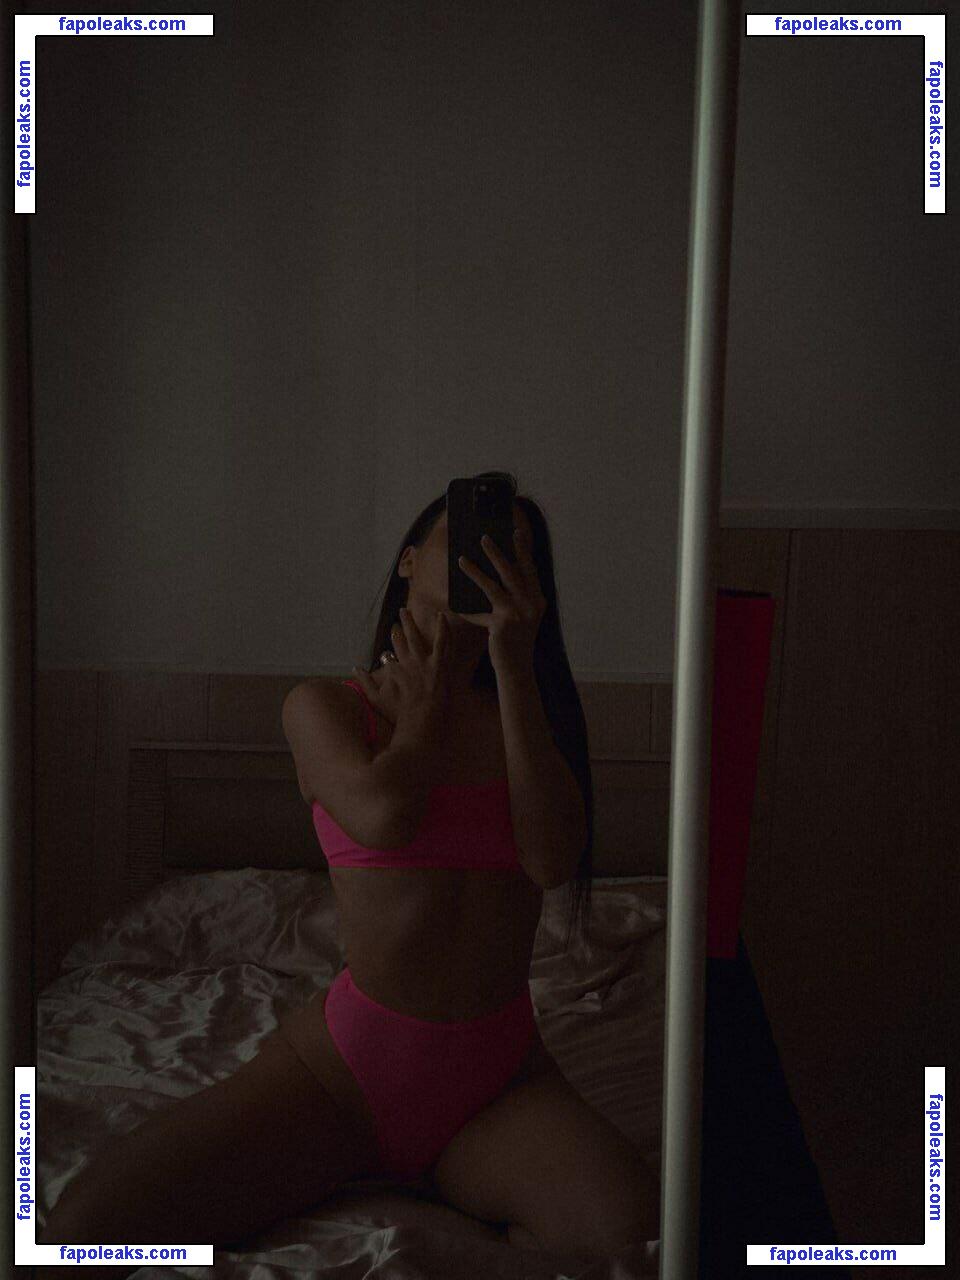 Anastasia Steklova / astklv nude photo #0259 from OnlyFans